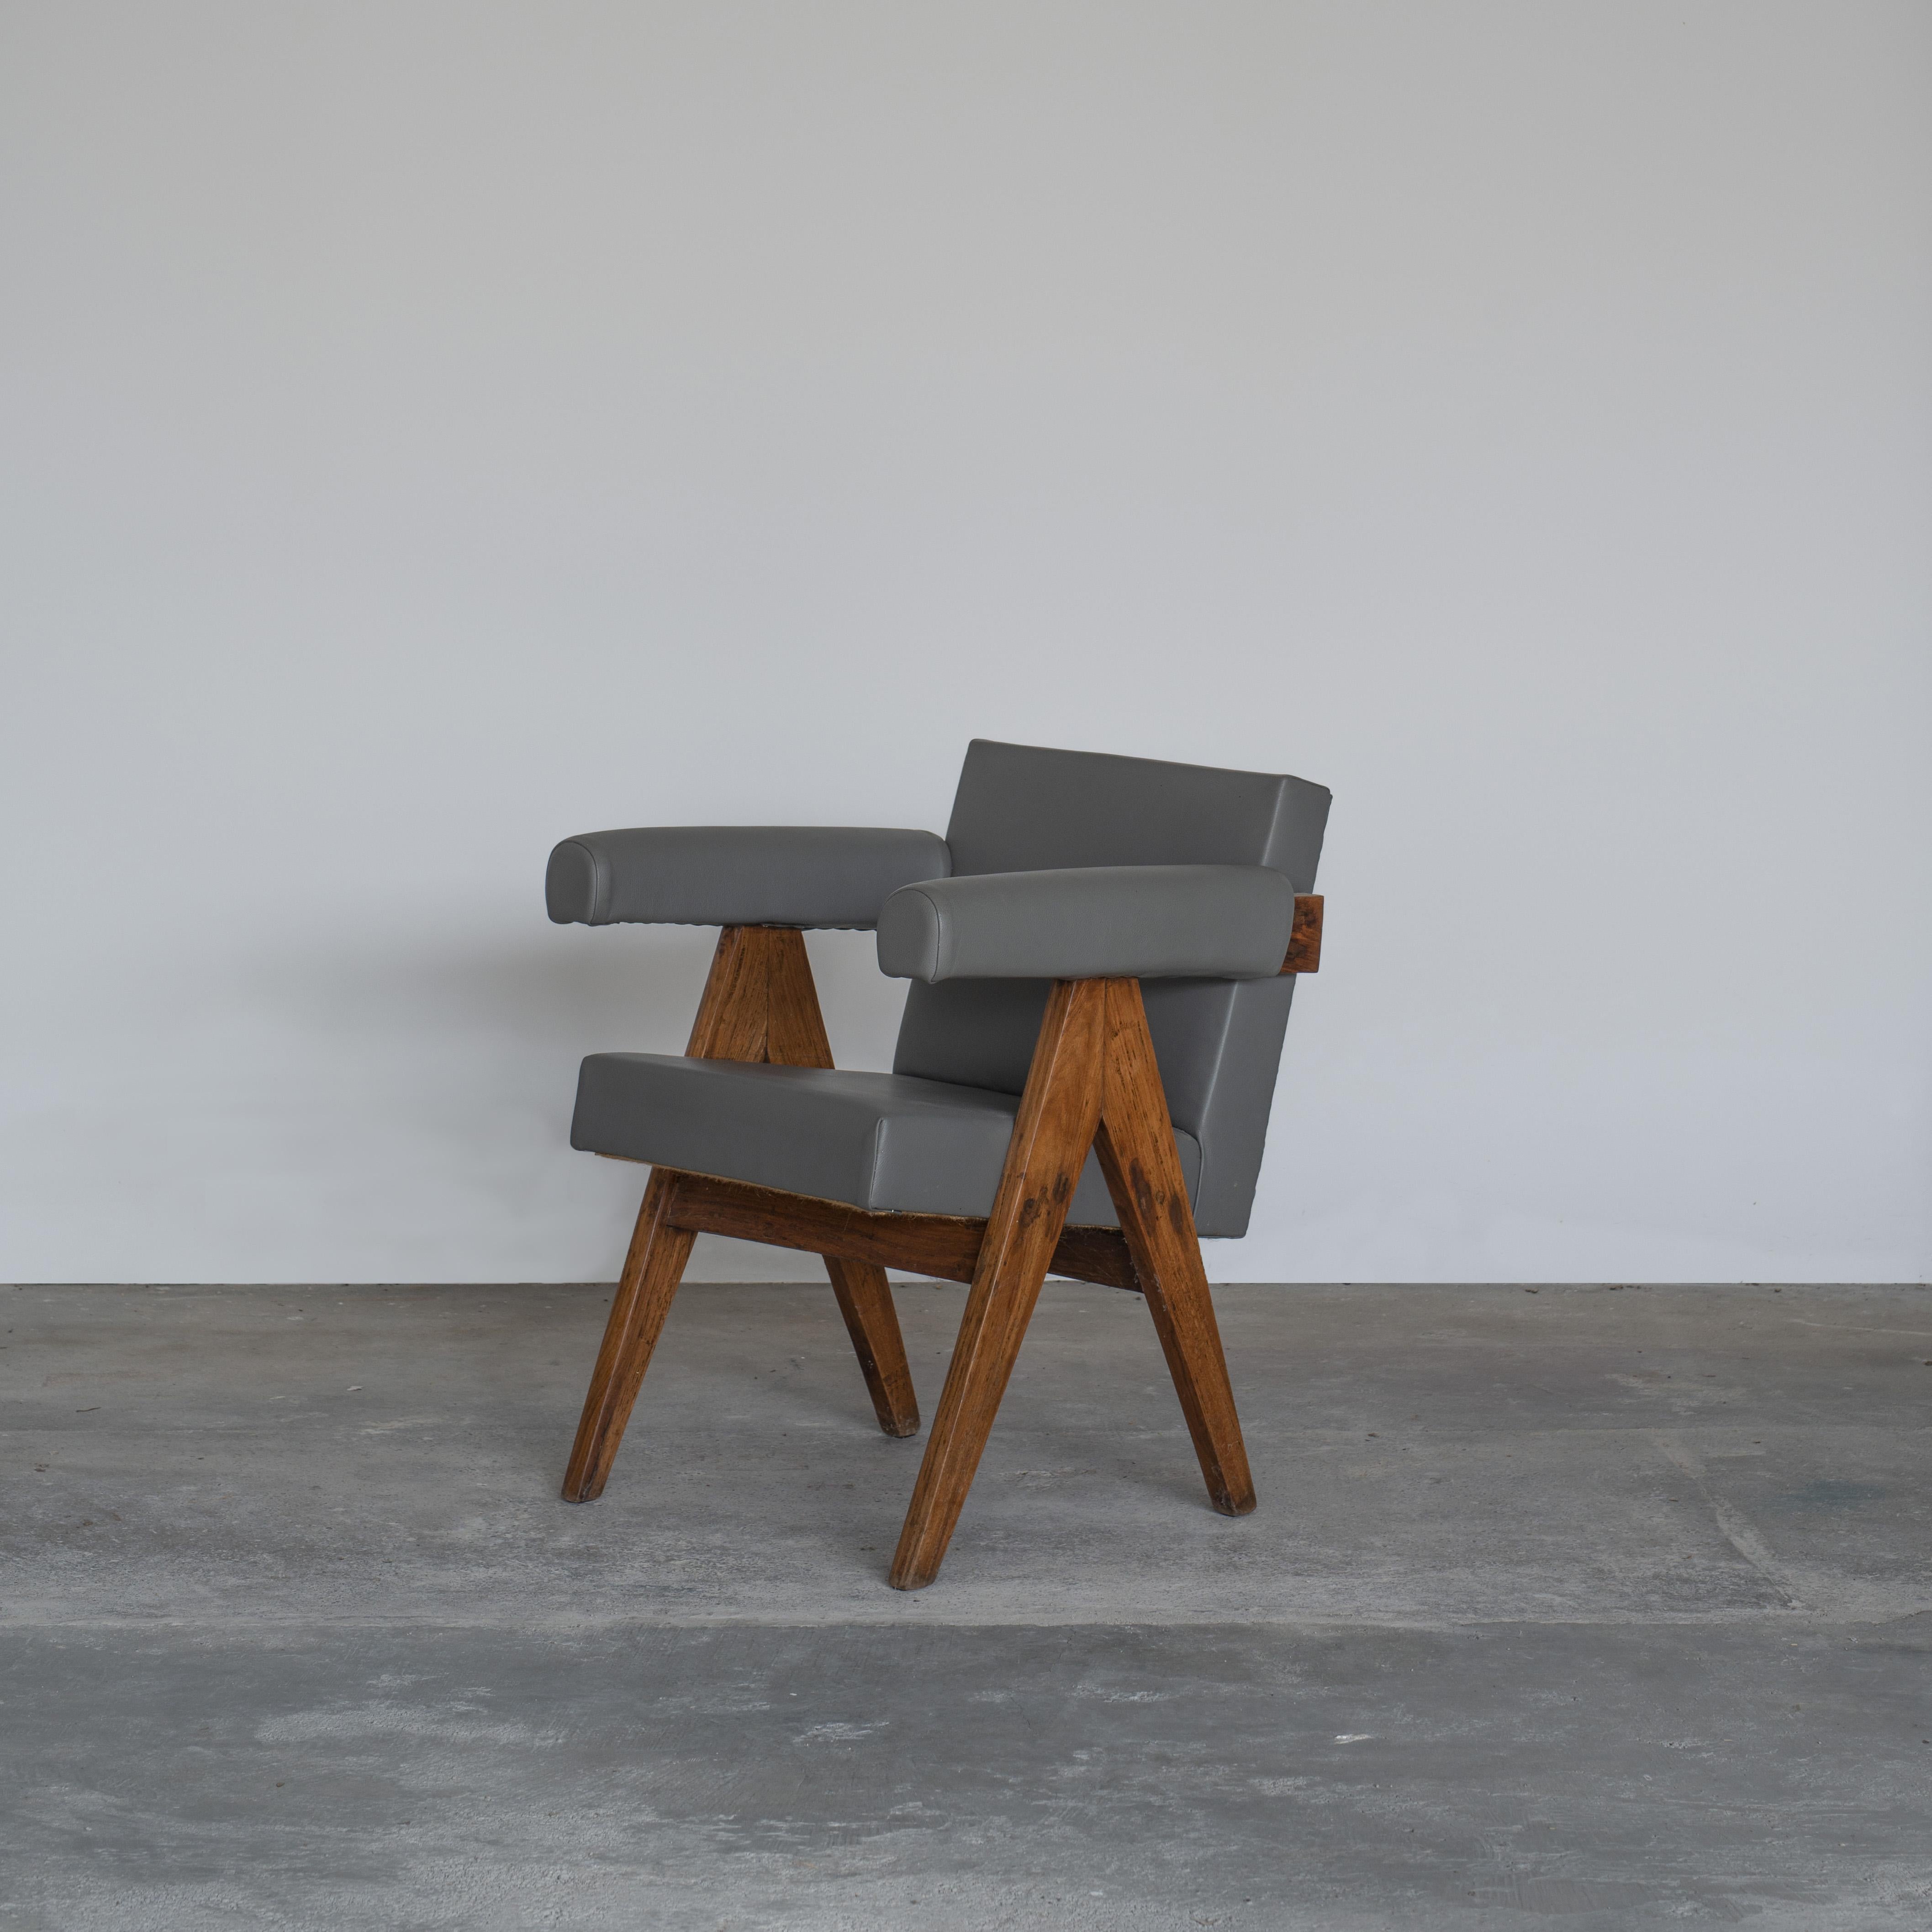 Cette chaise au profil caractéristique en forme de A est un rare classique de l'histoire. Par ses proportions sophistiquées et sa forme élégante, la chaise représente l'état d'esprit intemporel de l'architecture et du design modernistes. Il est